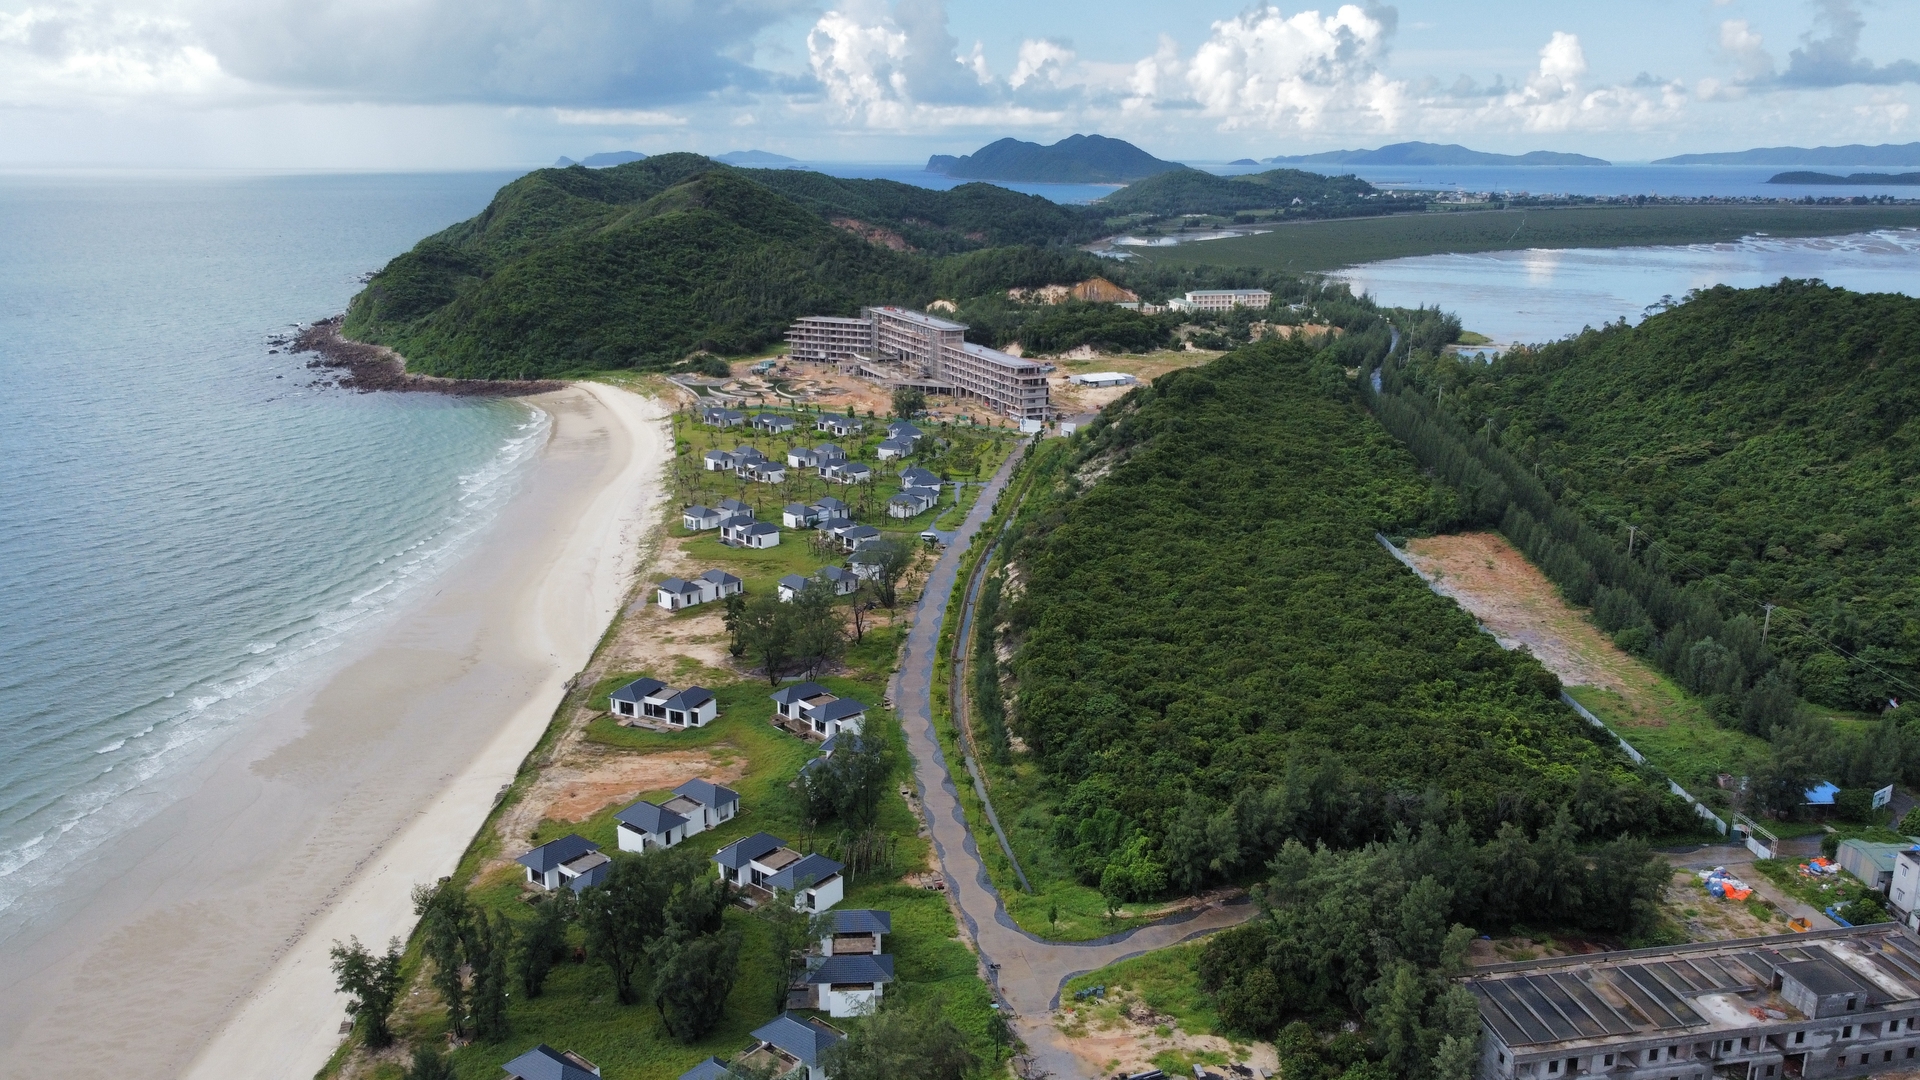 Khu du lịch sinh thái cao cấp Vân Hải ở Quan Lạn - Minh Châu đang được hoàn thiện, phấn đấu đưa vào vận hành năm 2023.